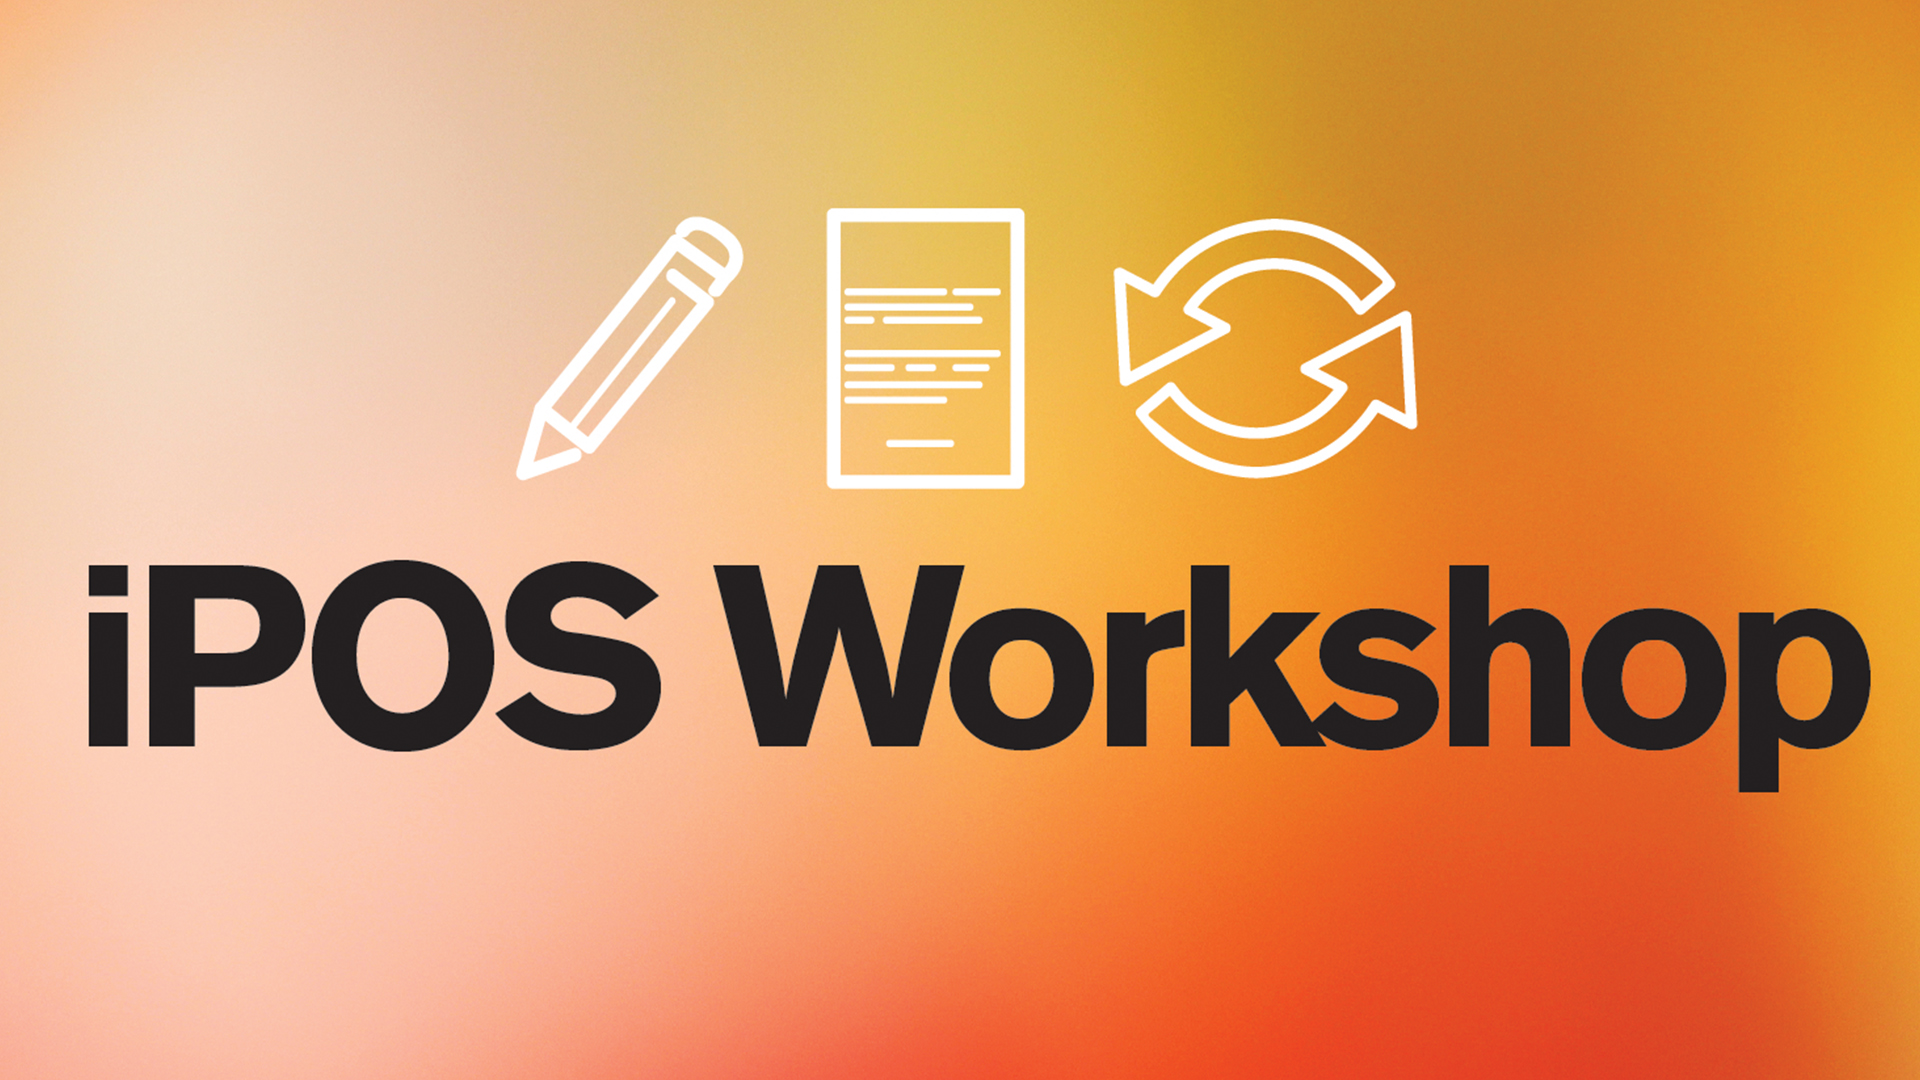 iPOS workshop